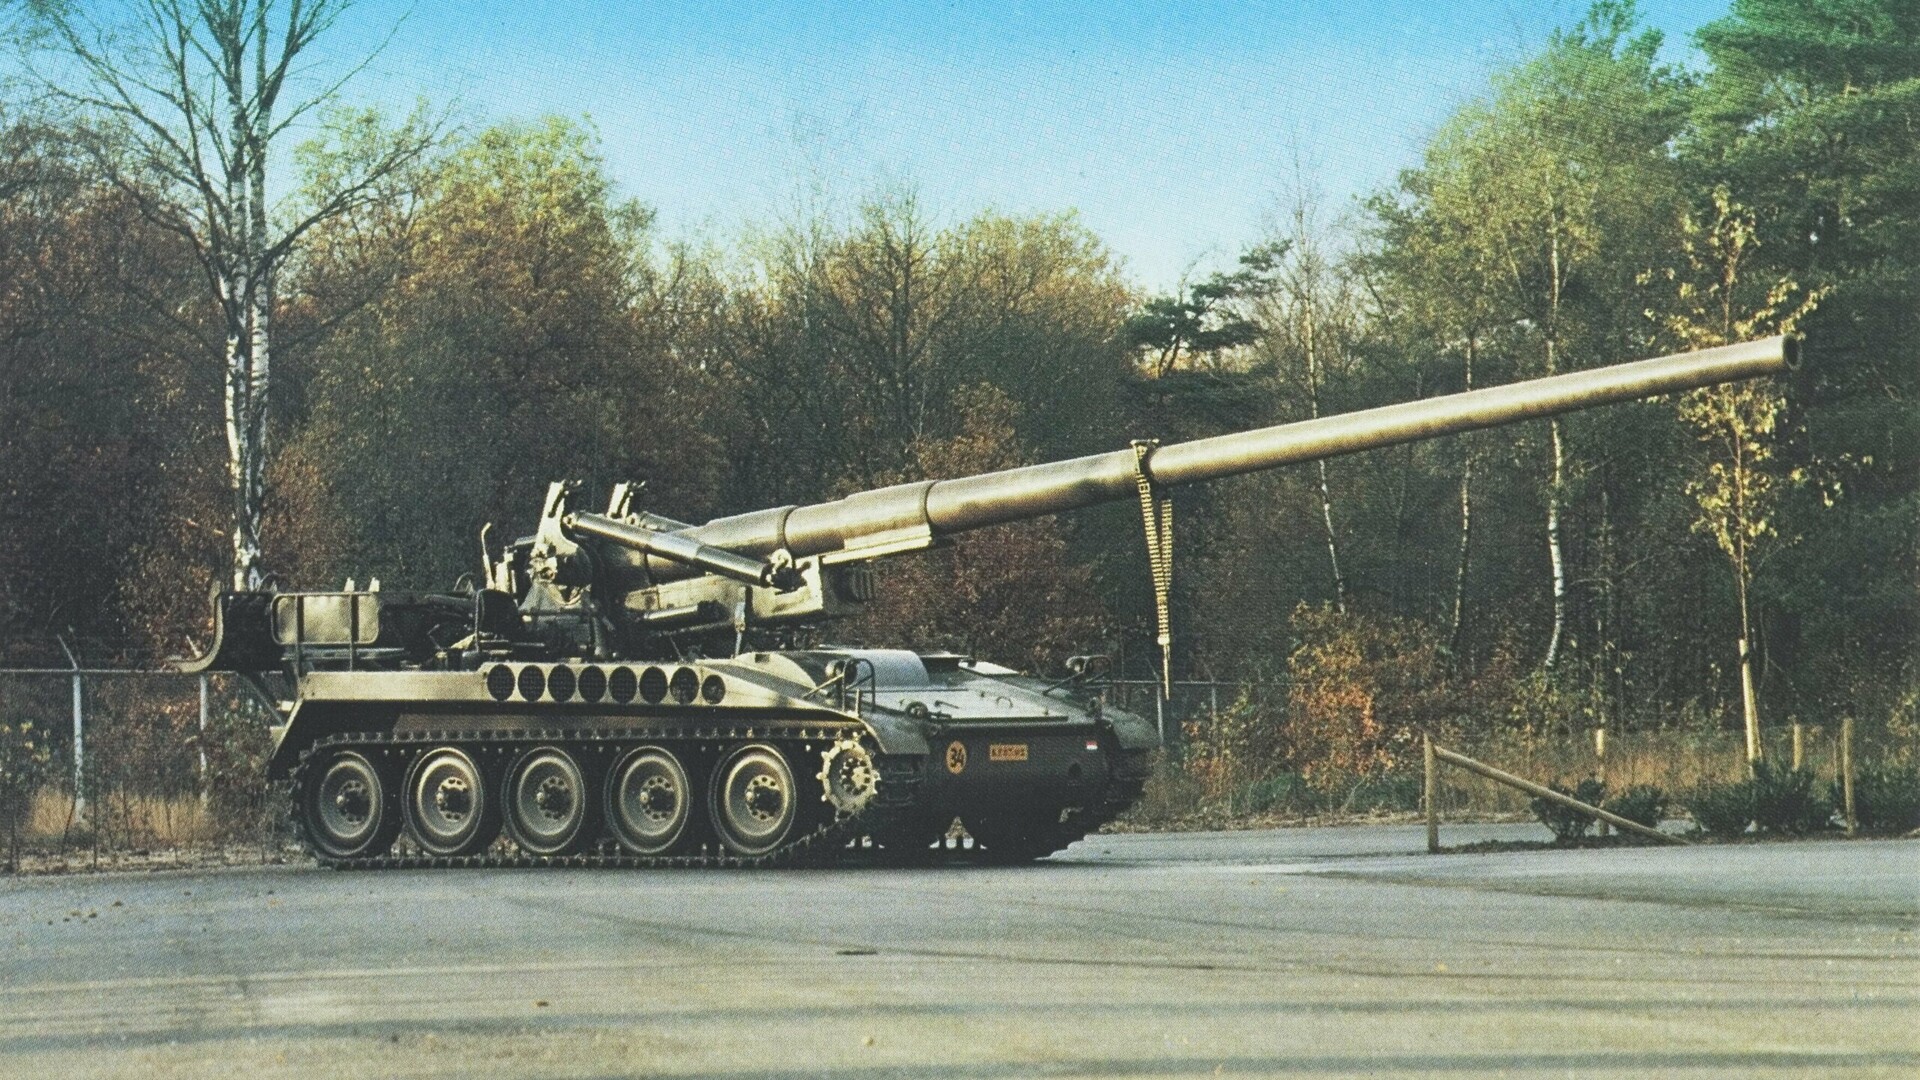 //M107-Haubitze / Archivbild zur Illustration (cropped) / Dutch M107 175 mm Self-propelled Howitzer by Leger Film- en Fotodienst (LFFD) is marked with CC0 1.0.